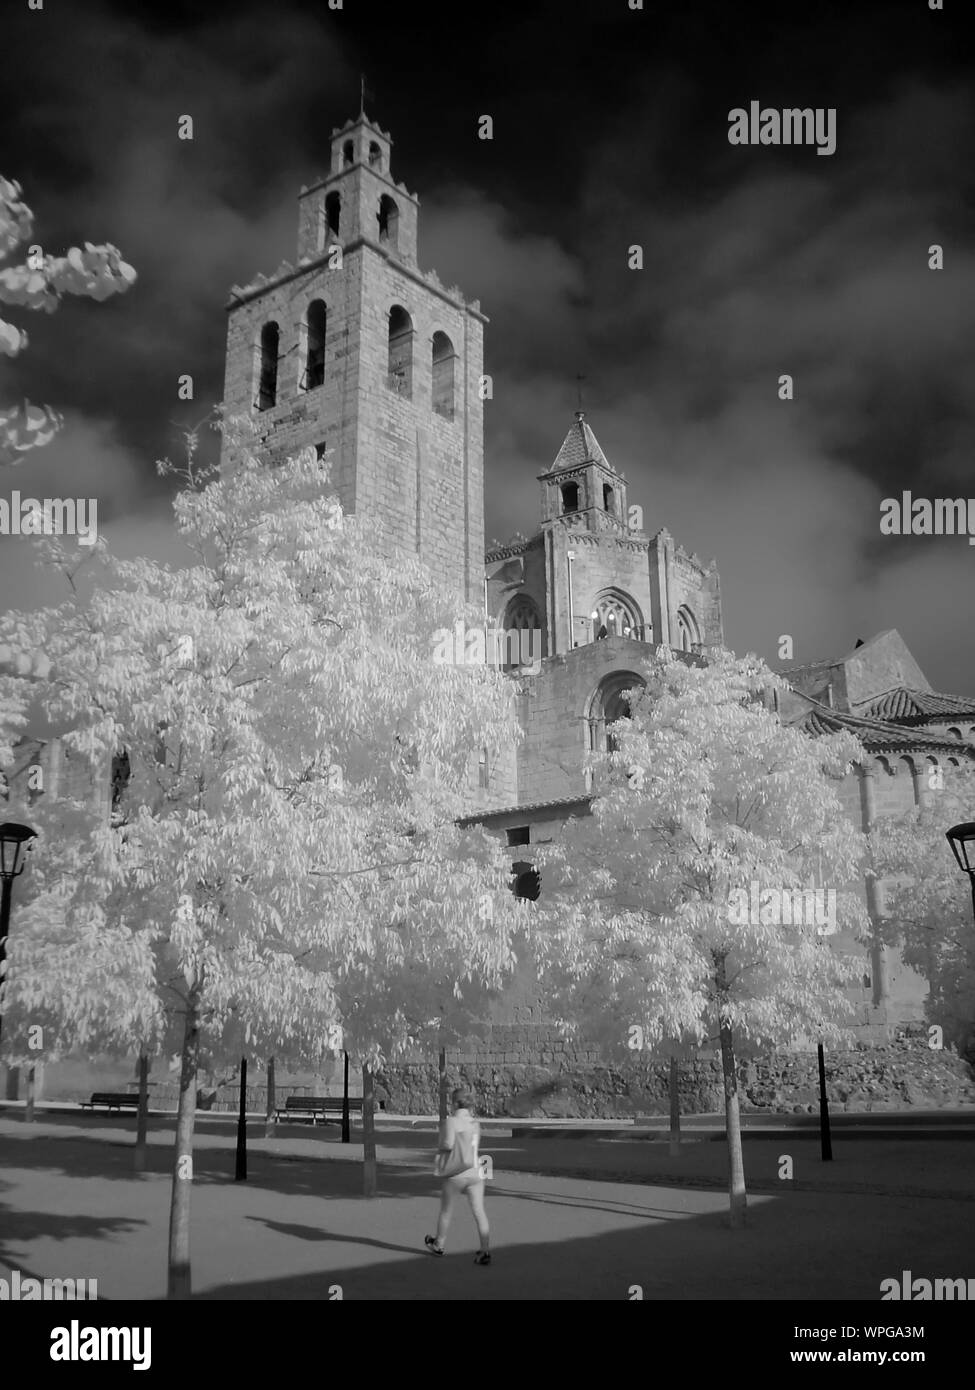 Ángulo de visión baja de monasterio antiguo contra el cielo nublado Foto de stock